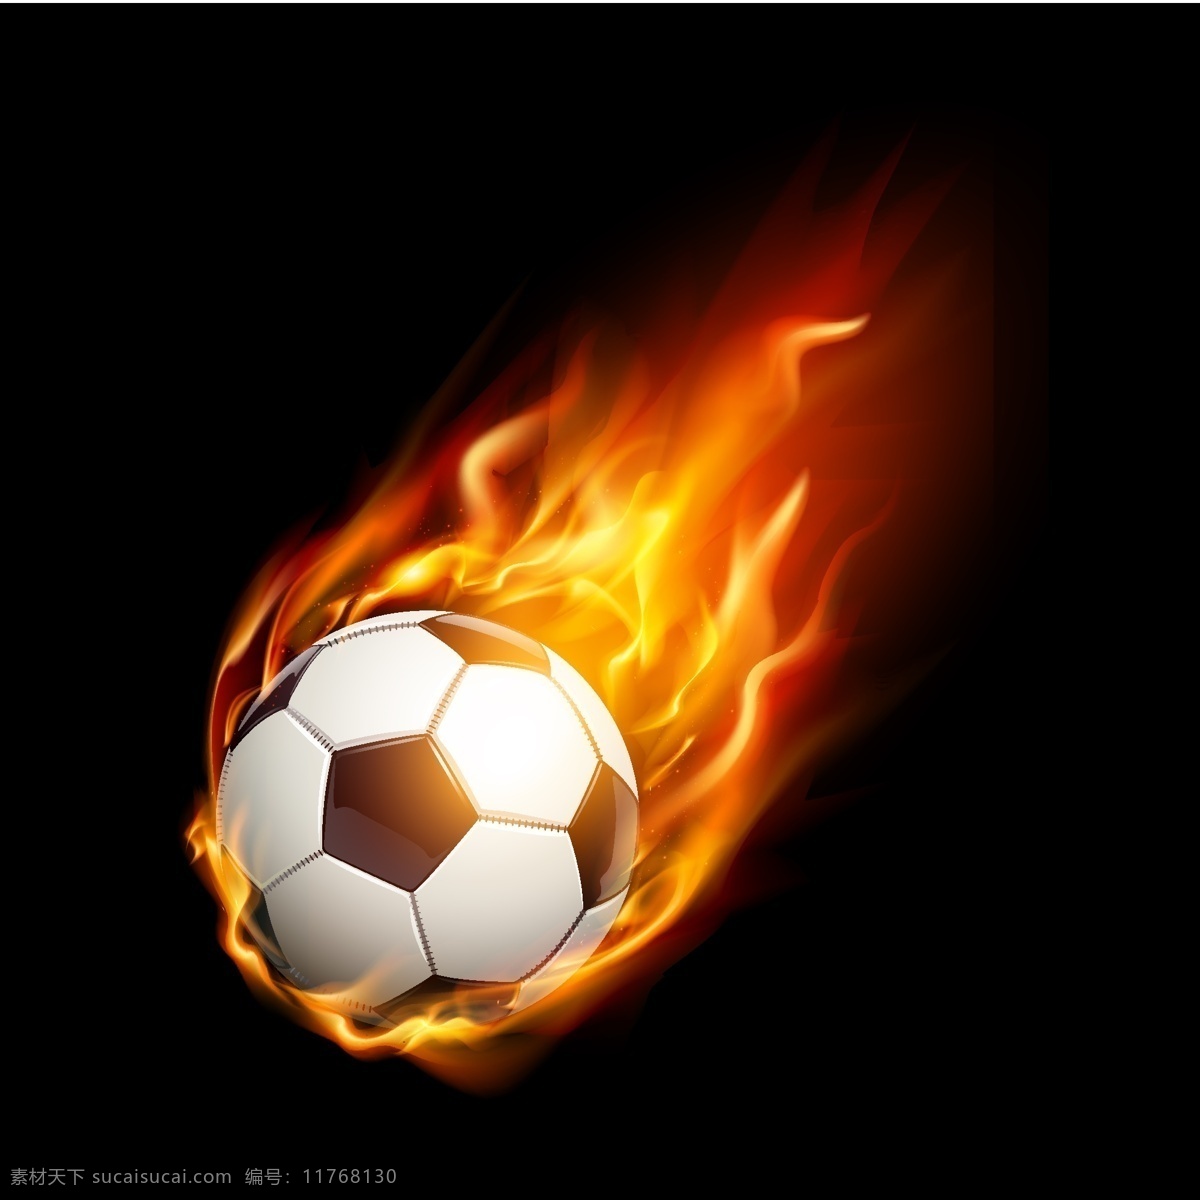 火焰 足球 矢量 火焰足球矢量 火焰足球素材 火焰足球 足球矢量素材 足球矢量 足球素材 火焰足球海报 共享设计矢量 生活百科 体育用品